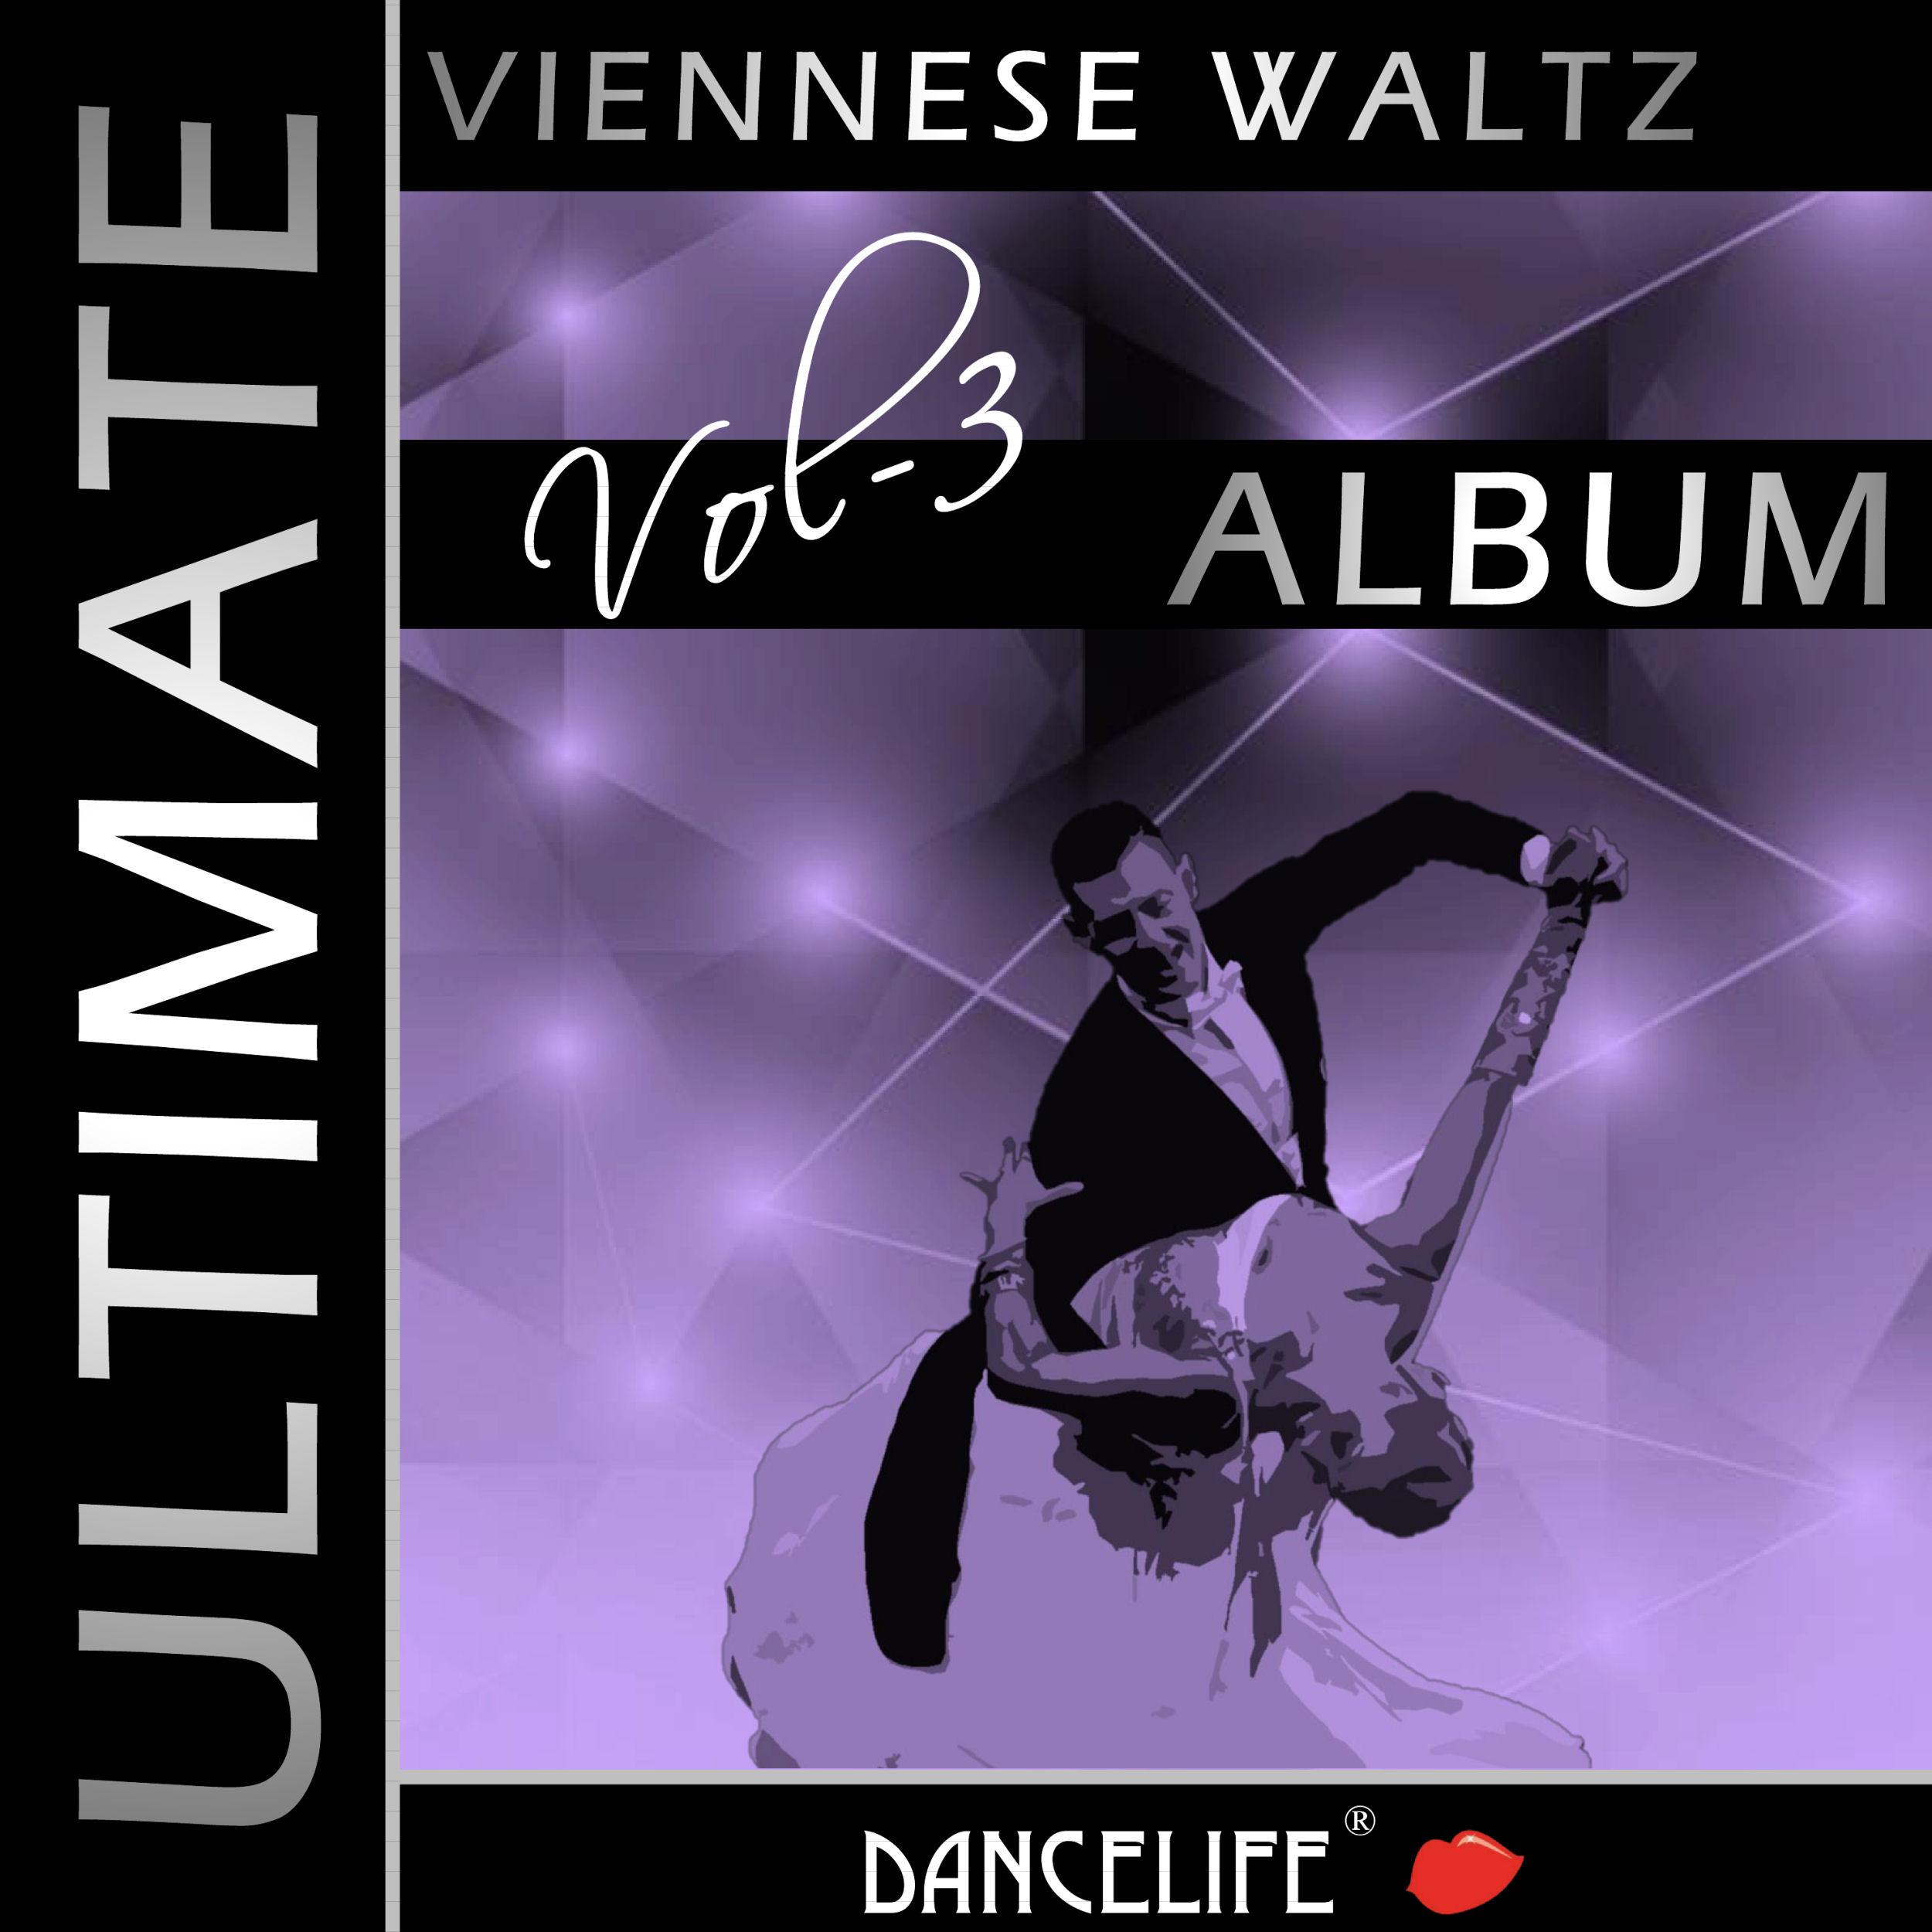 Wien, Wien (Viennese Waltz / 60 Bpm / Competition)